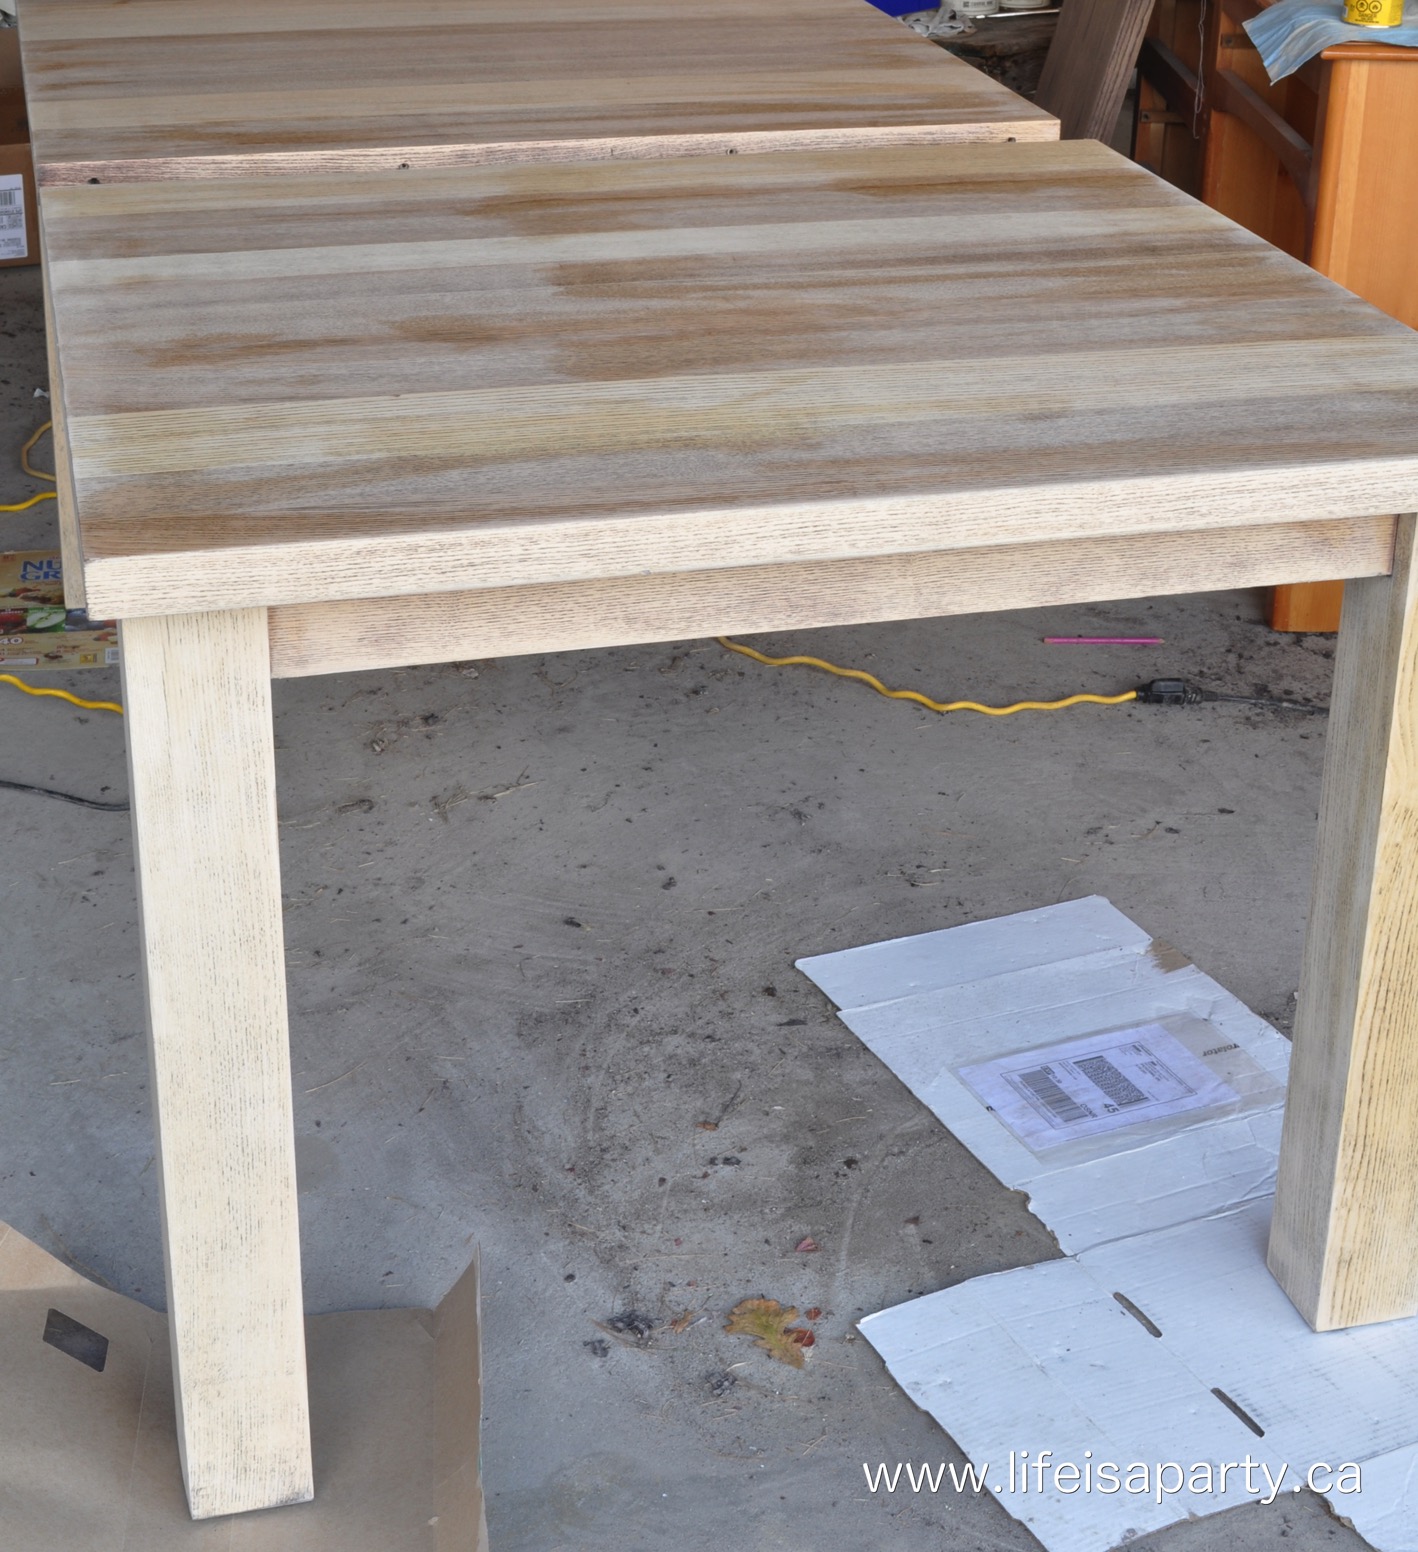 veneer table stripped of dark stain